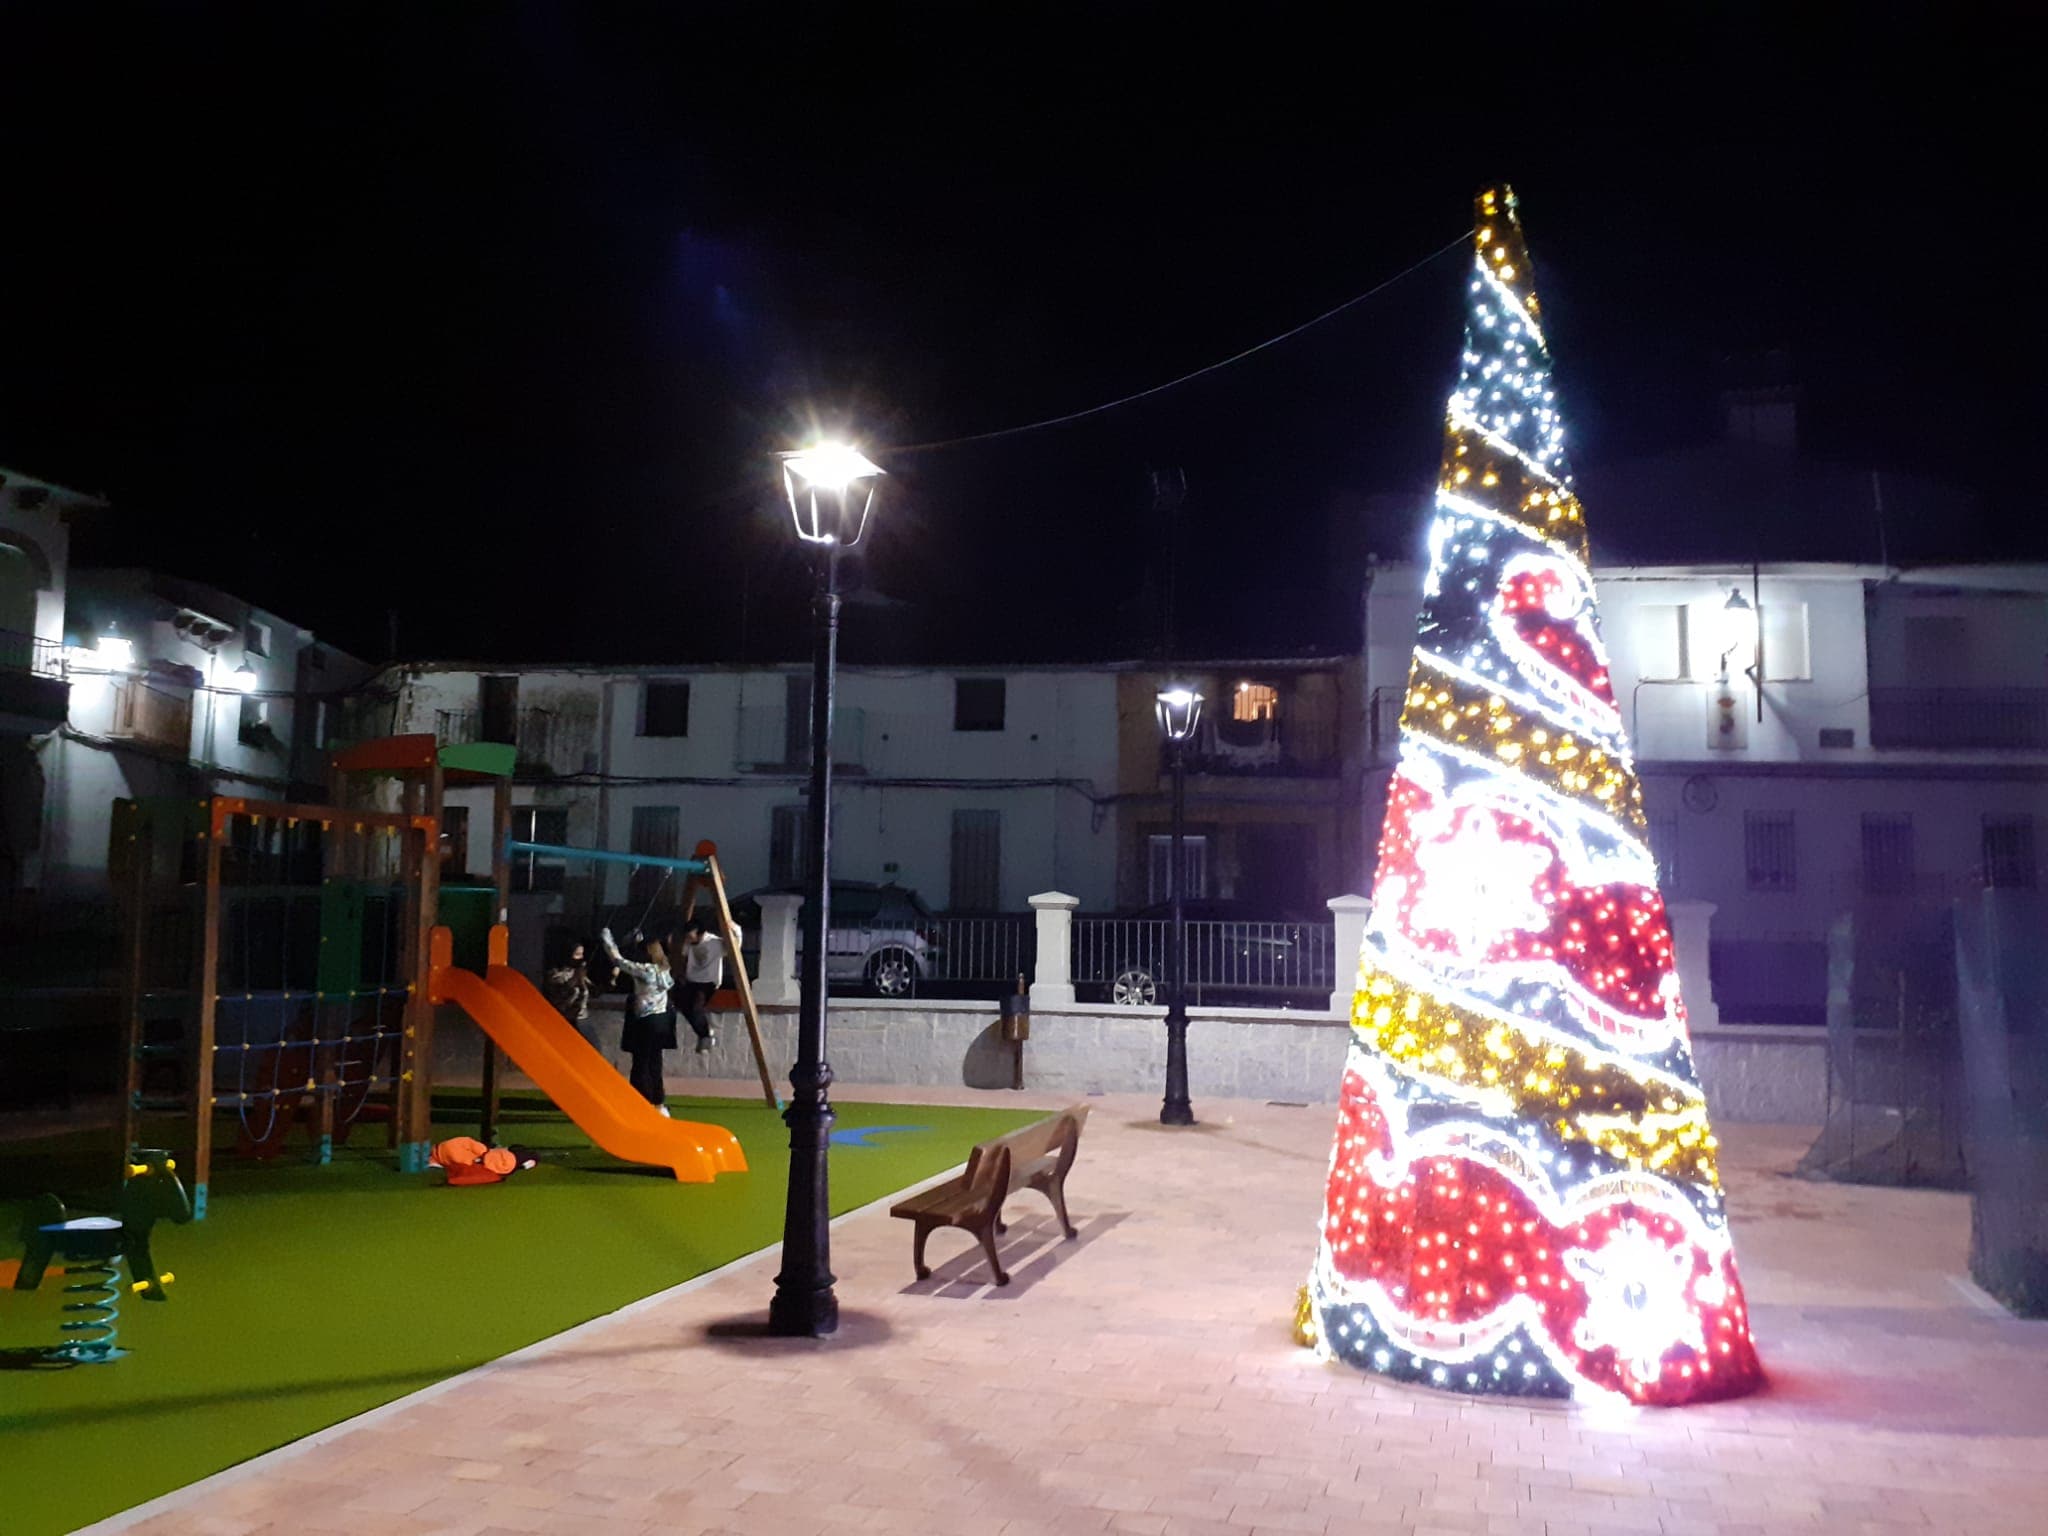 El Ayuntamiento de Deleitosa convoca un concurso de decoración navideña